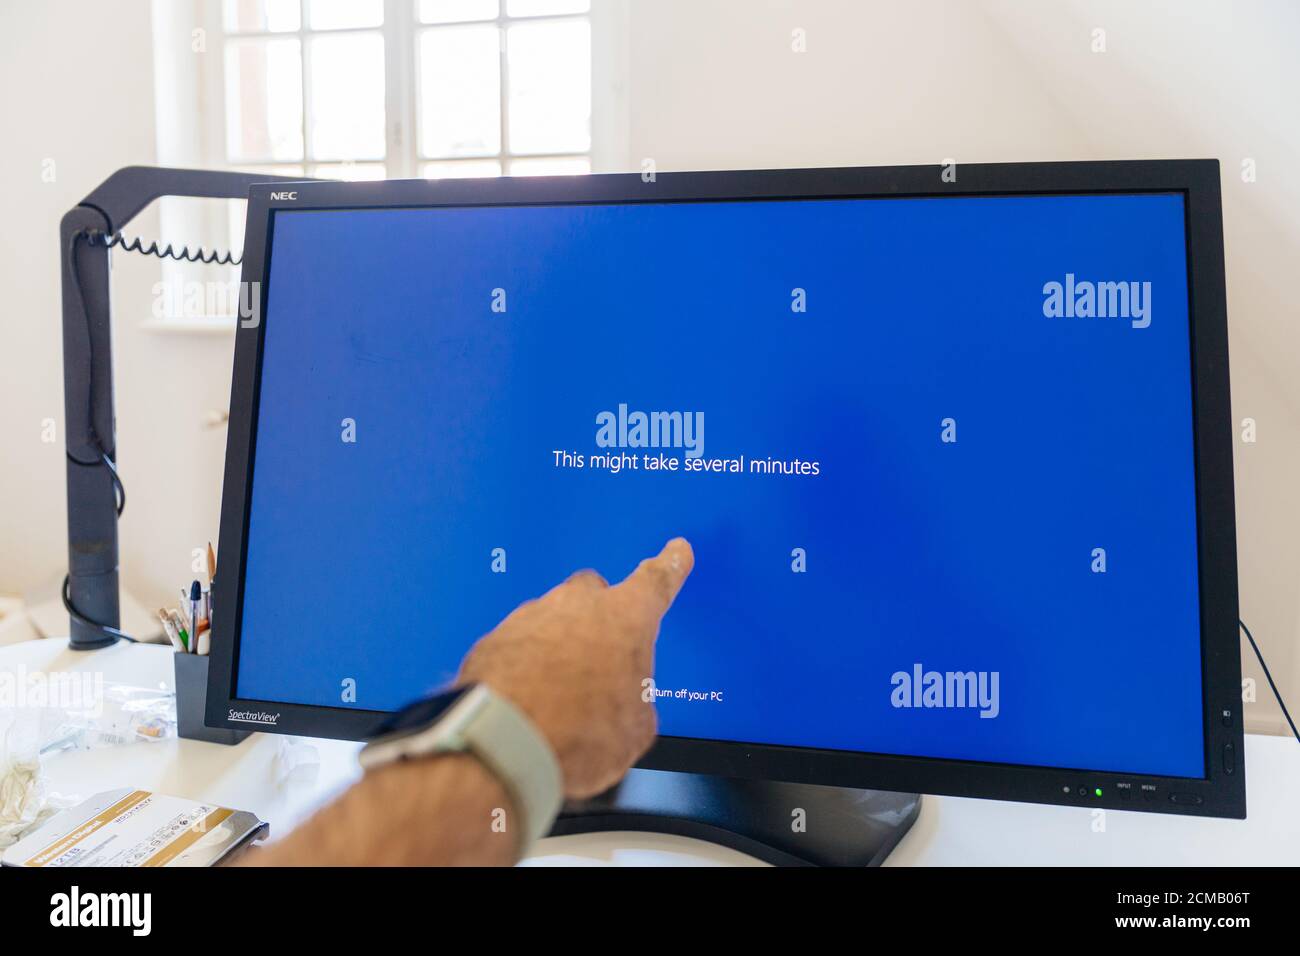 Paris, France - 7 septembre 2020 : la main mâle POV pointant vers le grand moniteur de référence NEC Spectraview présentant ceci peut prendre plusieurs minutes de texte pendant la mise à jour de l'écran bleu de Microsoft Windows Banque D'Images